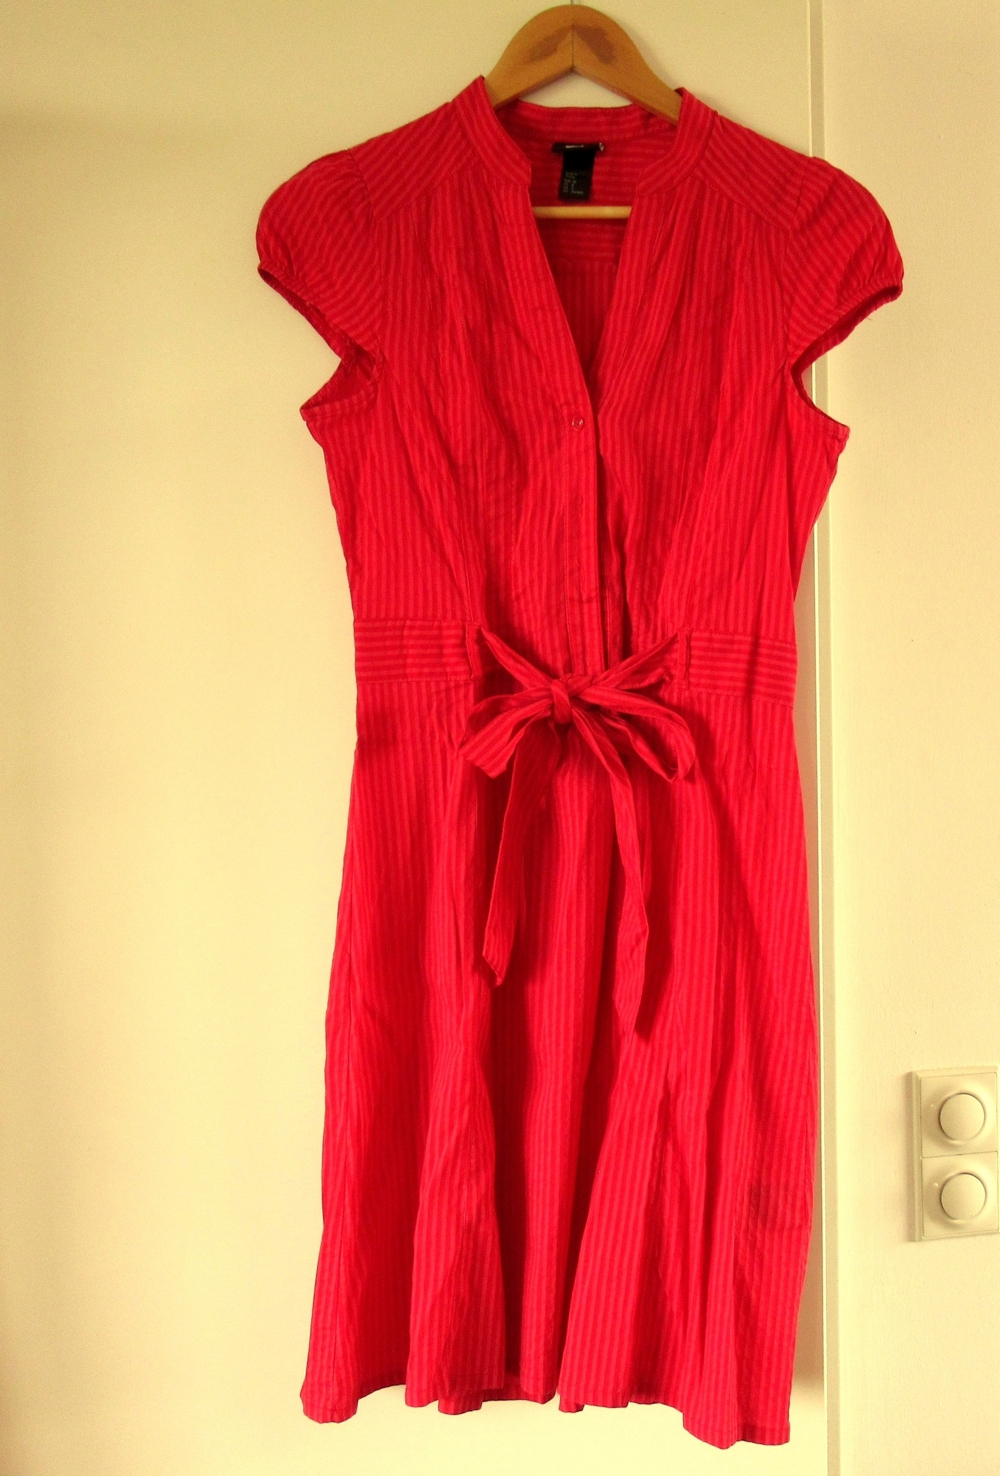 NEUWERTIGEs rotgestreiftes Kleid mit Bändel H & M Gr. 38